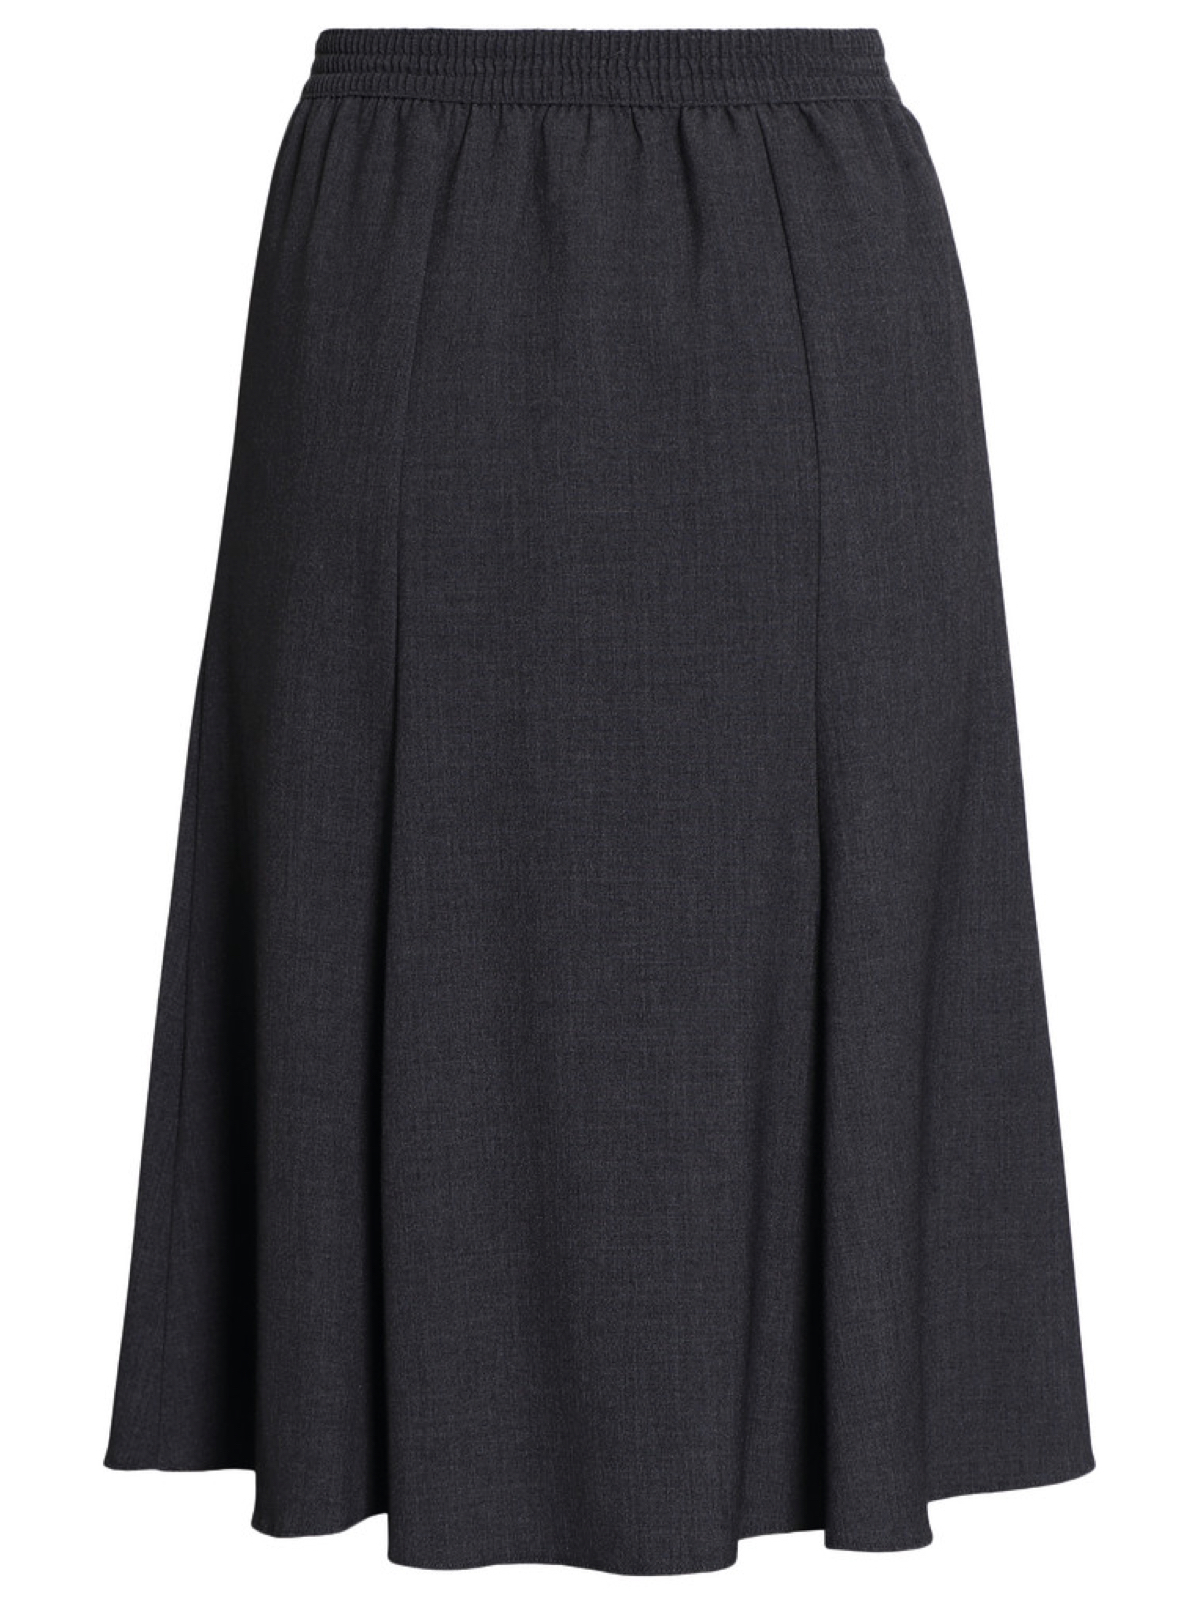 Brandtex | Smart feminin nederdel (Sort, Grå, Navy,